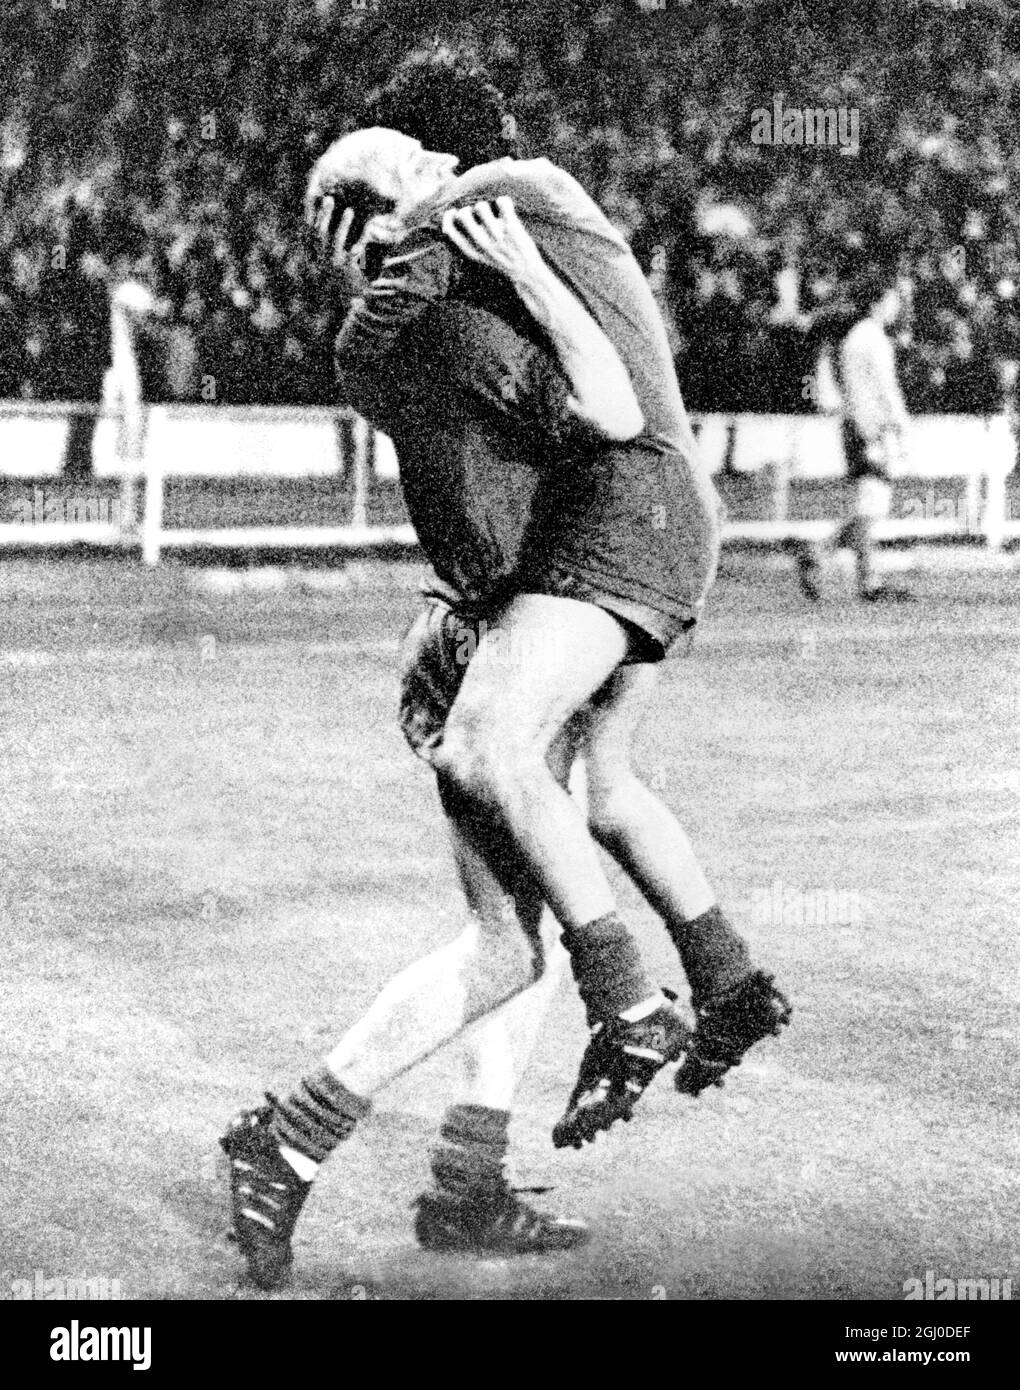 1968 European Cup Final Manchester United gegen Benfica George Best und Bobby Charlton teilen ihren größten Moment, nachdem Manchester United Benfica beim European Cup Final im Wembley-Stadion mit vier Toren zu einem geschlagen hat. Mai 1968. Stockfoto